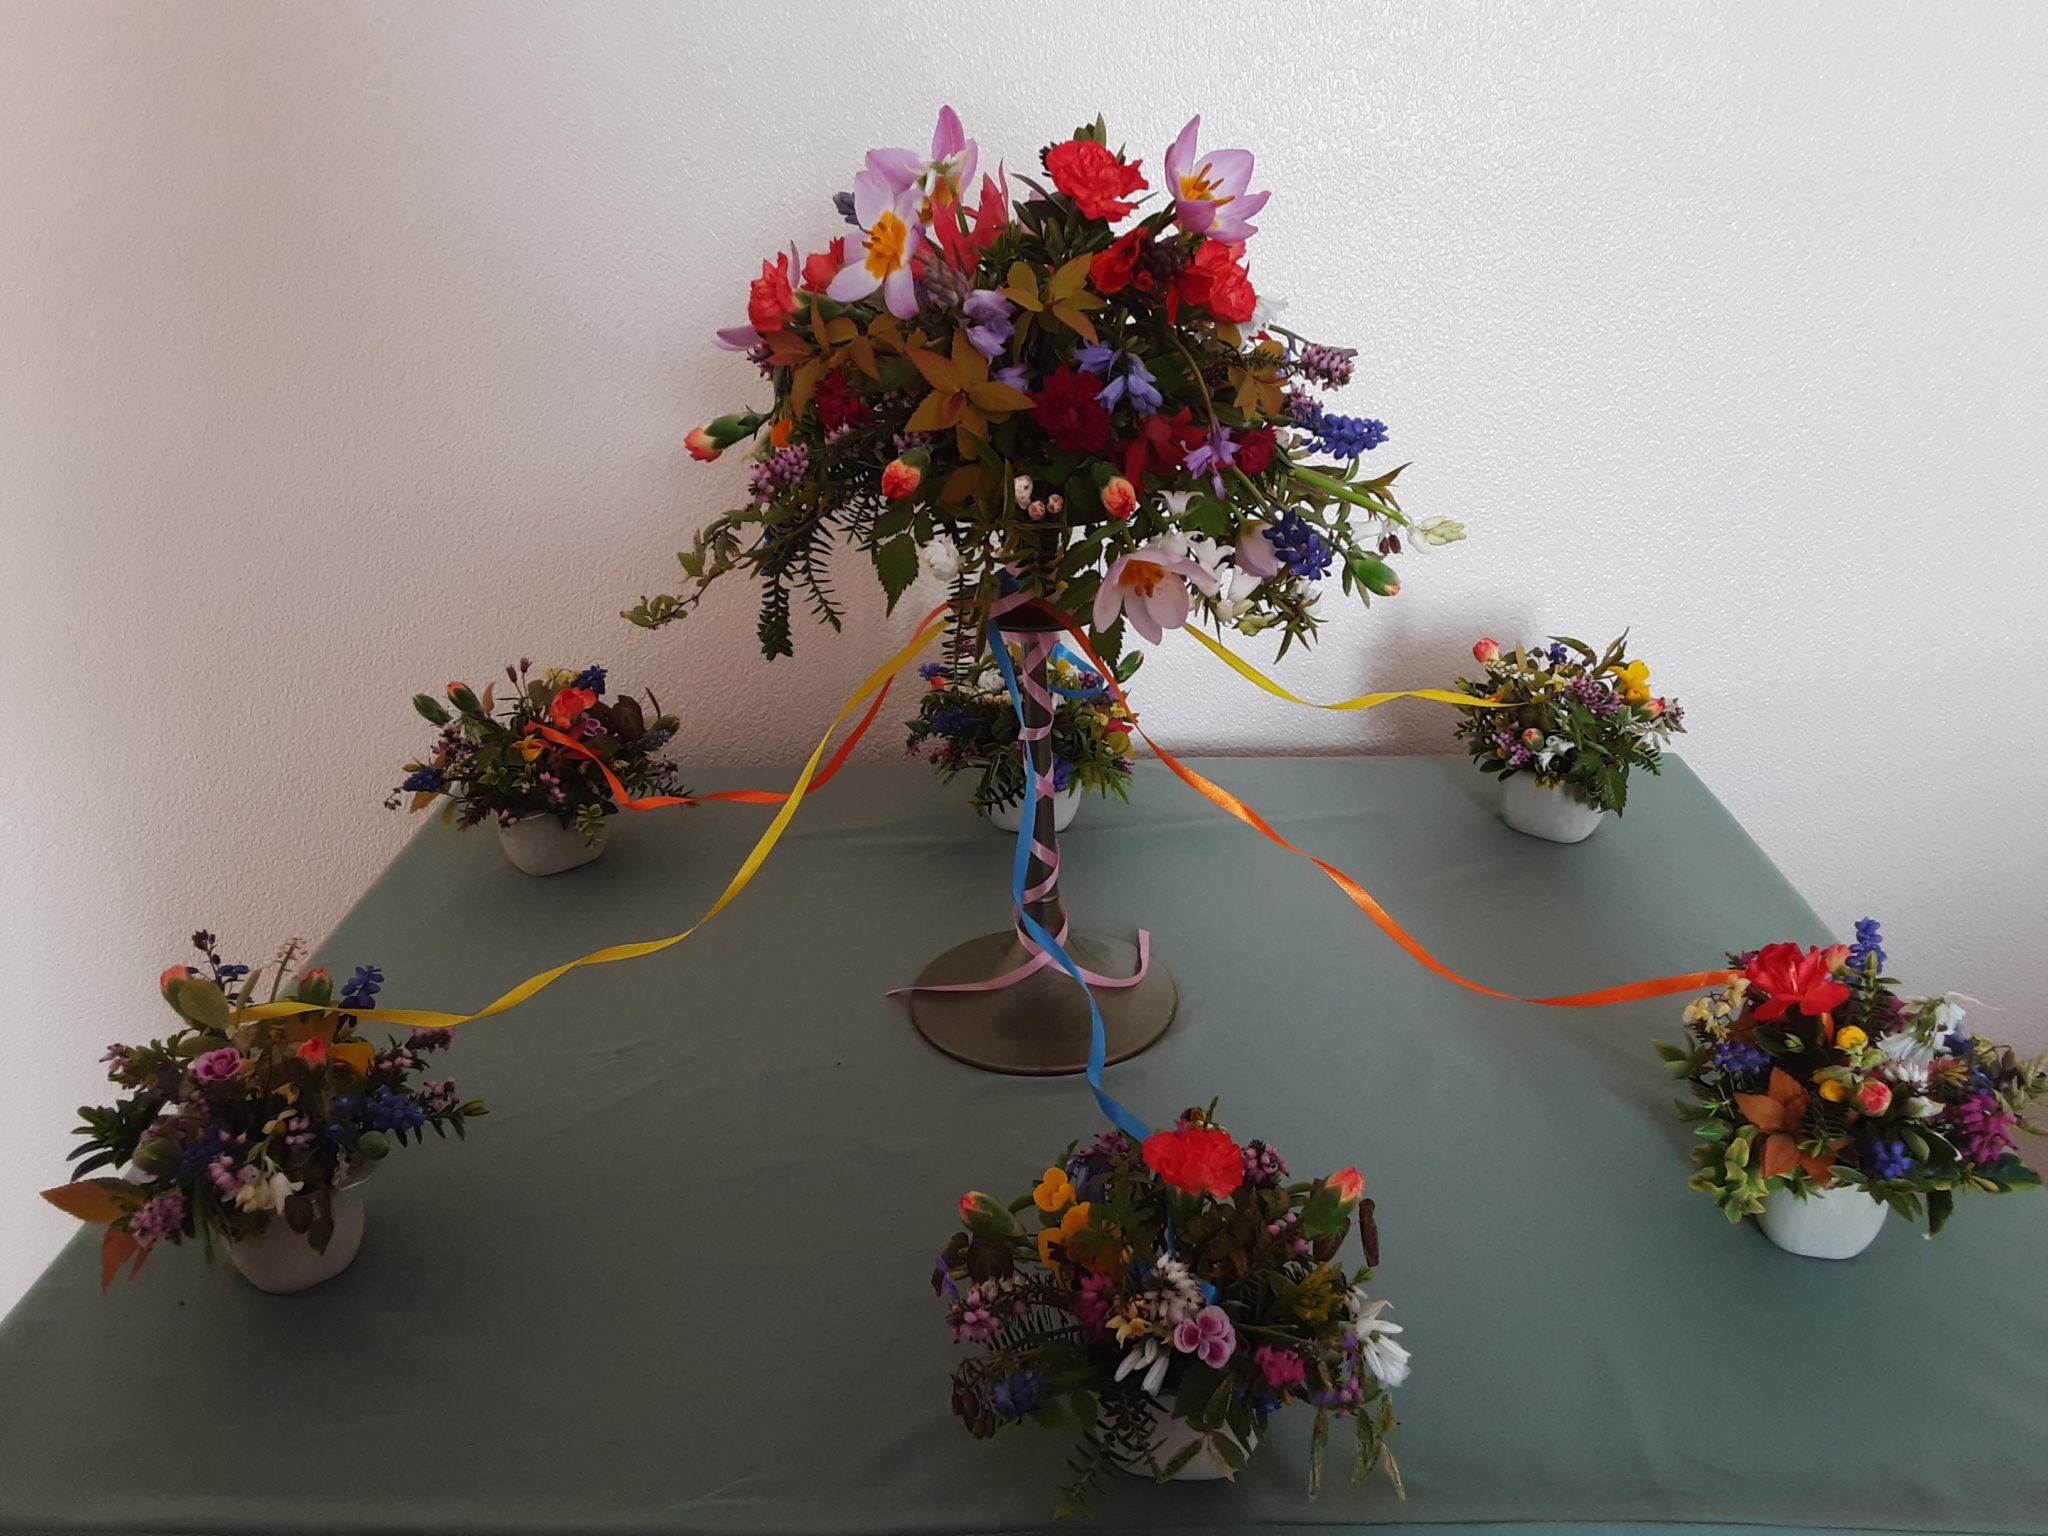 Chris Jones - West Moors Floral Group